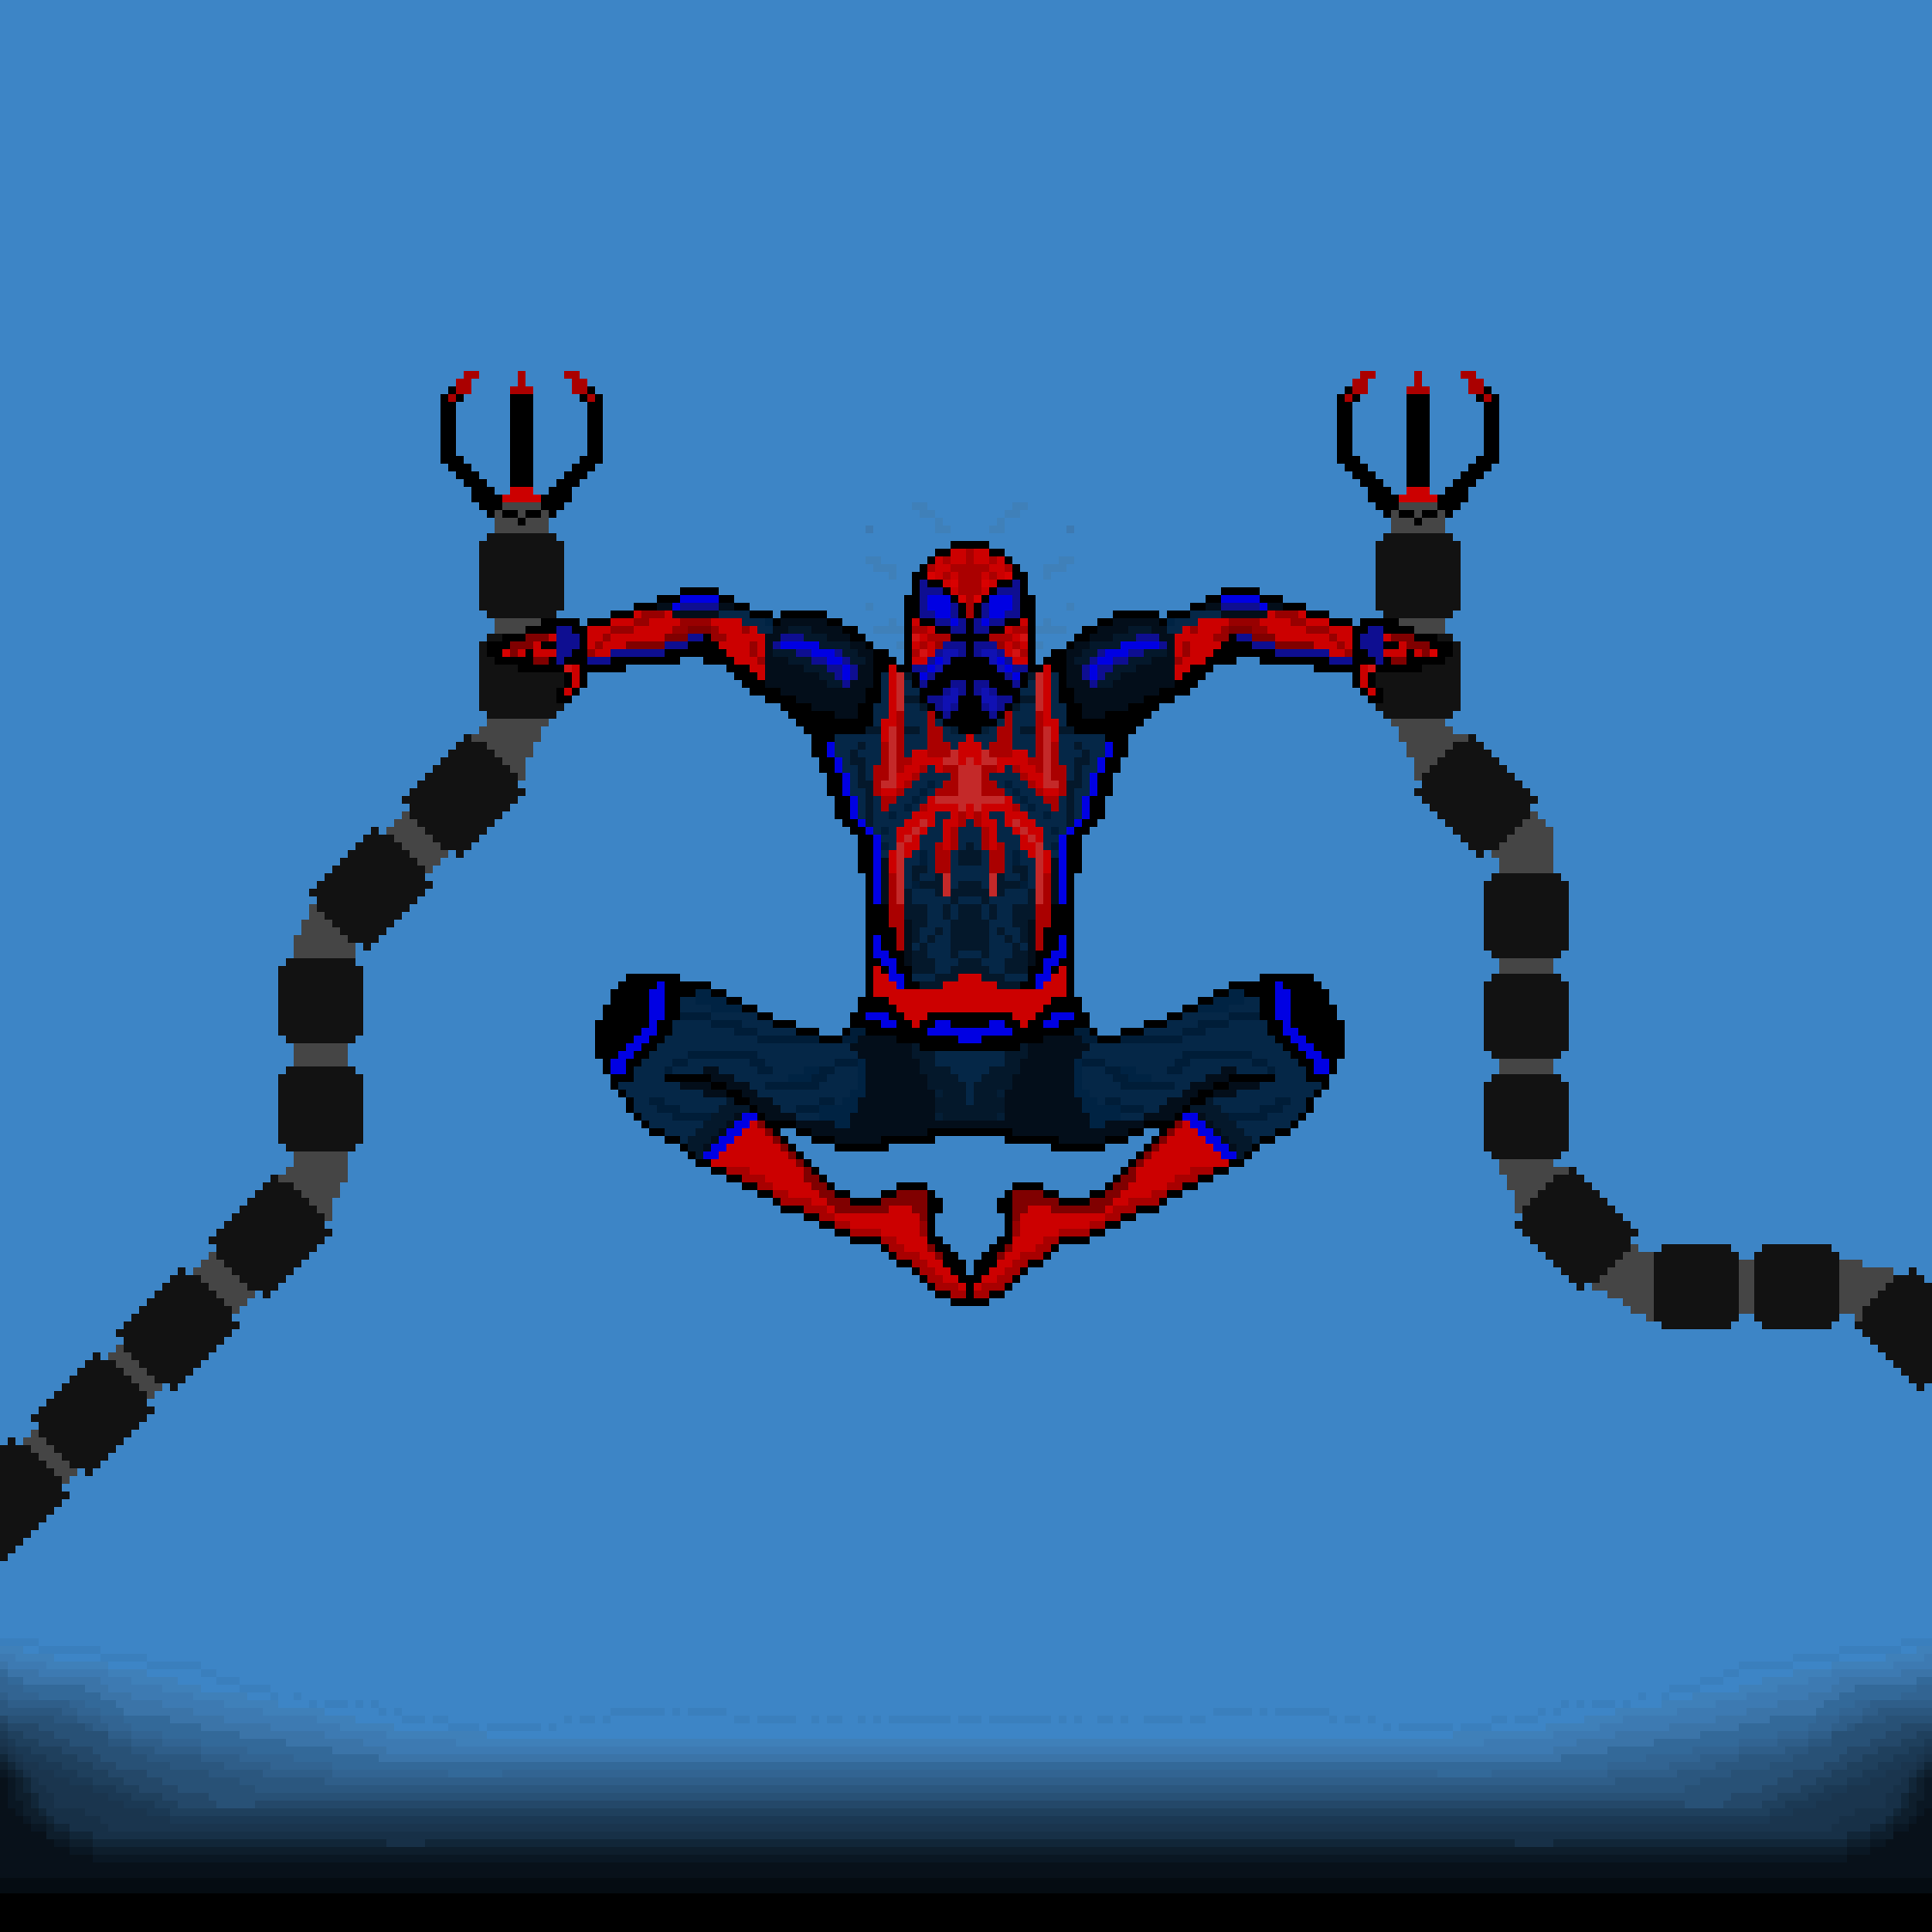 Spider-man (My version improved)